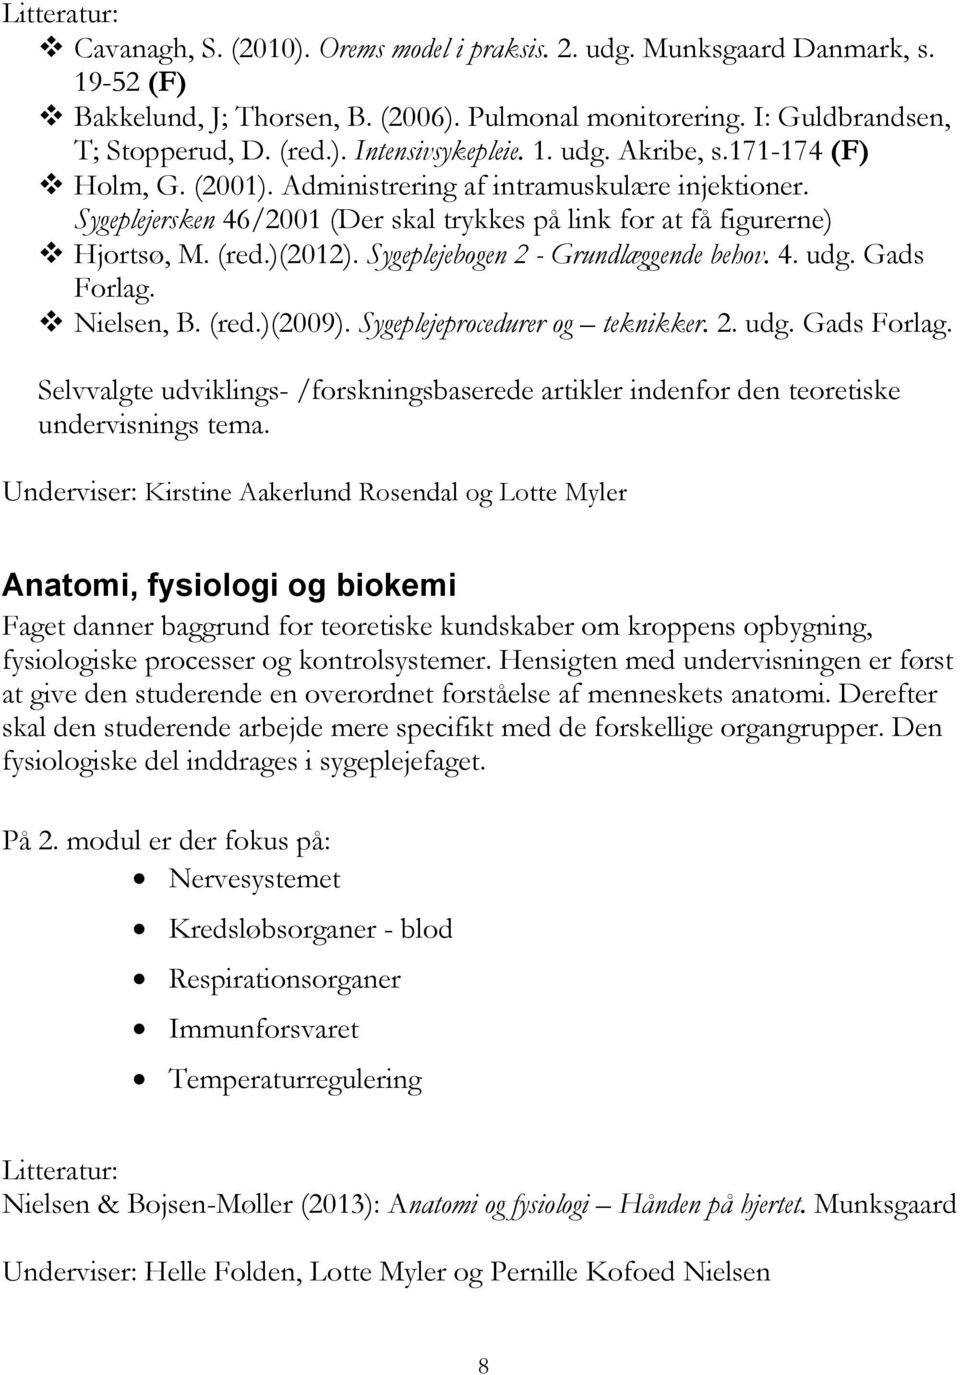 Sygeplejebogen 2 - Grundlæggende behov. 4. udg. Gads Forlag. Nielsen, B. (red.)(2009). Sygeplejeprocedurer og teknikker. 2. udg. Gads Forlag. Selvvalgte udviklings- /forskningsbaserede artikler indenfor den teoretiske undervisnings tema.